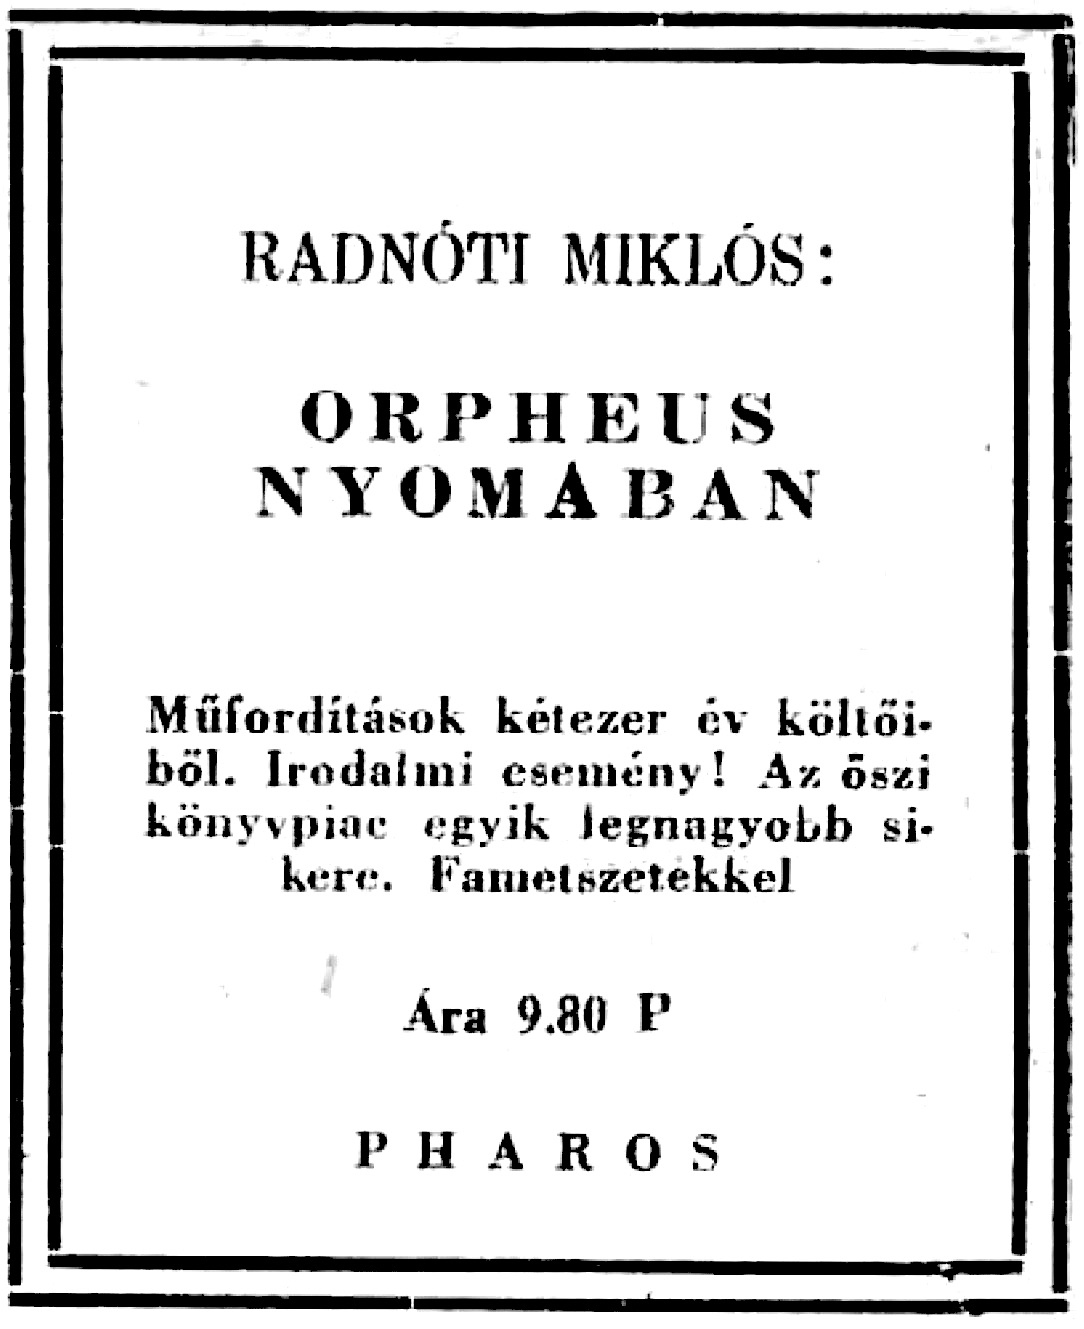 Radnóti Miklós Orpheus nyomában című kötetének reklámja